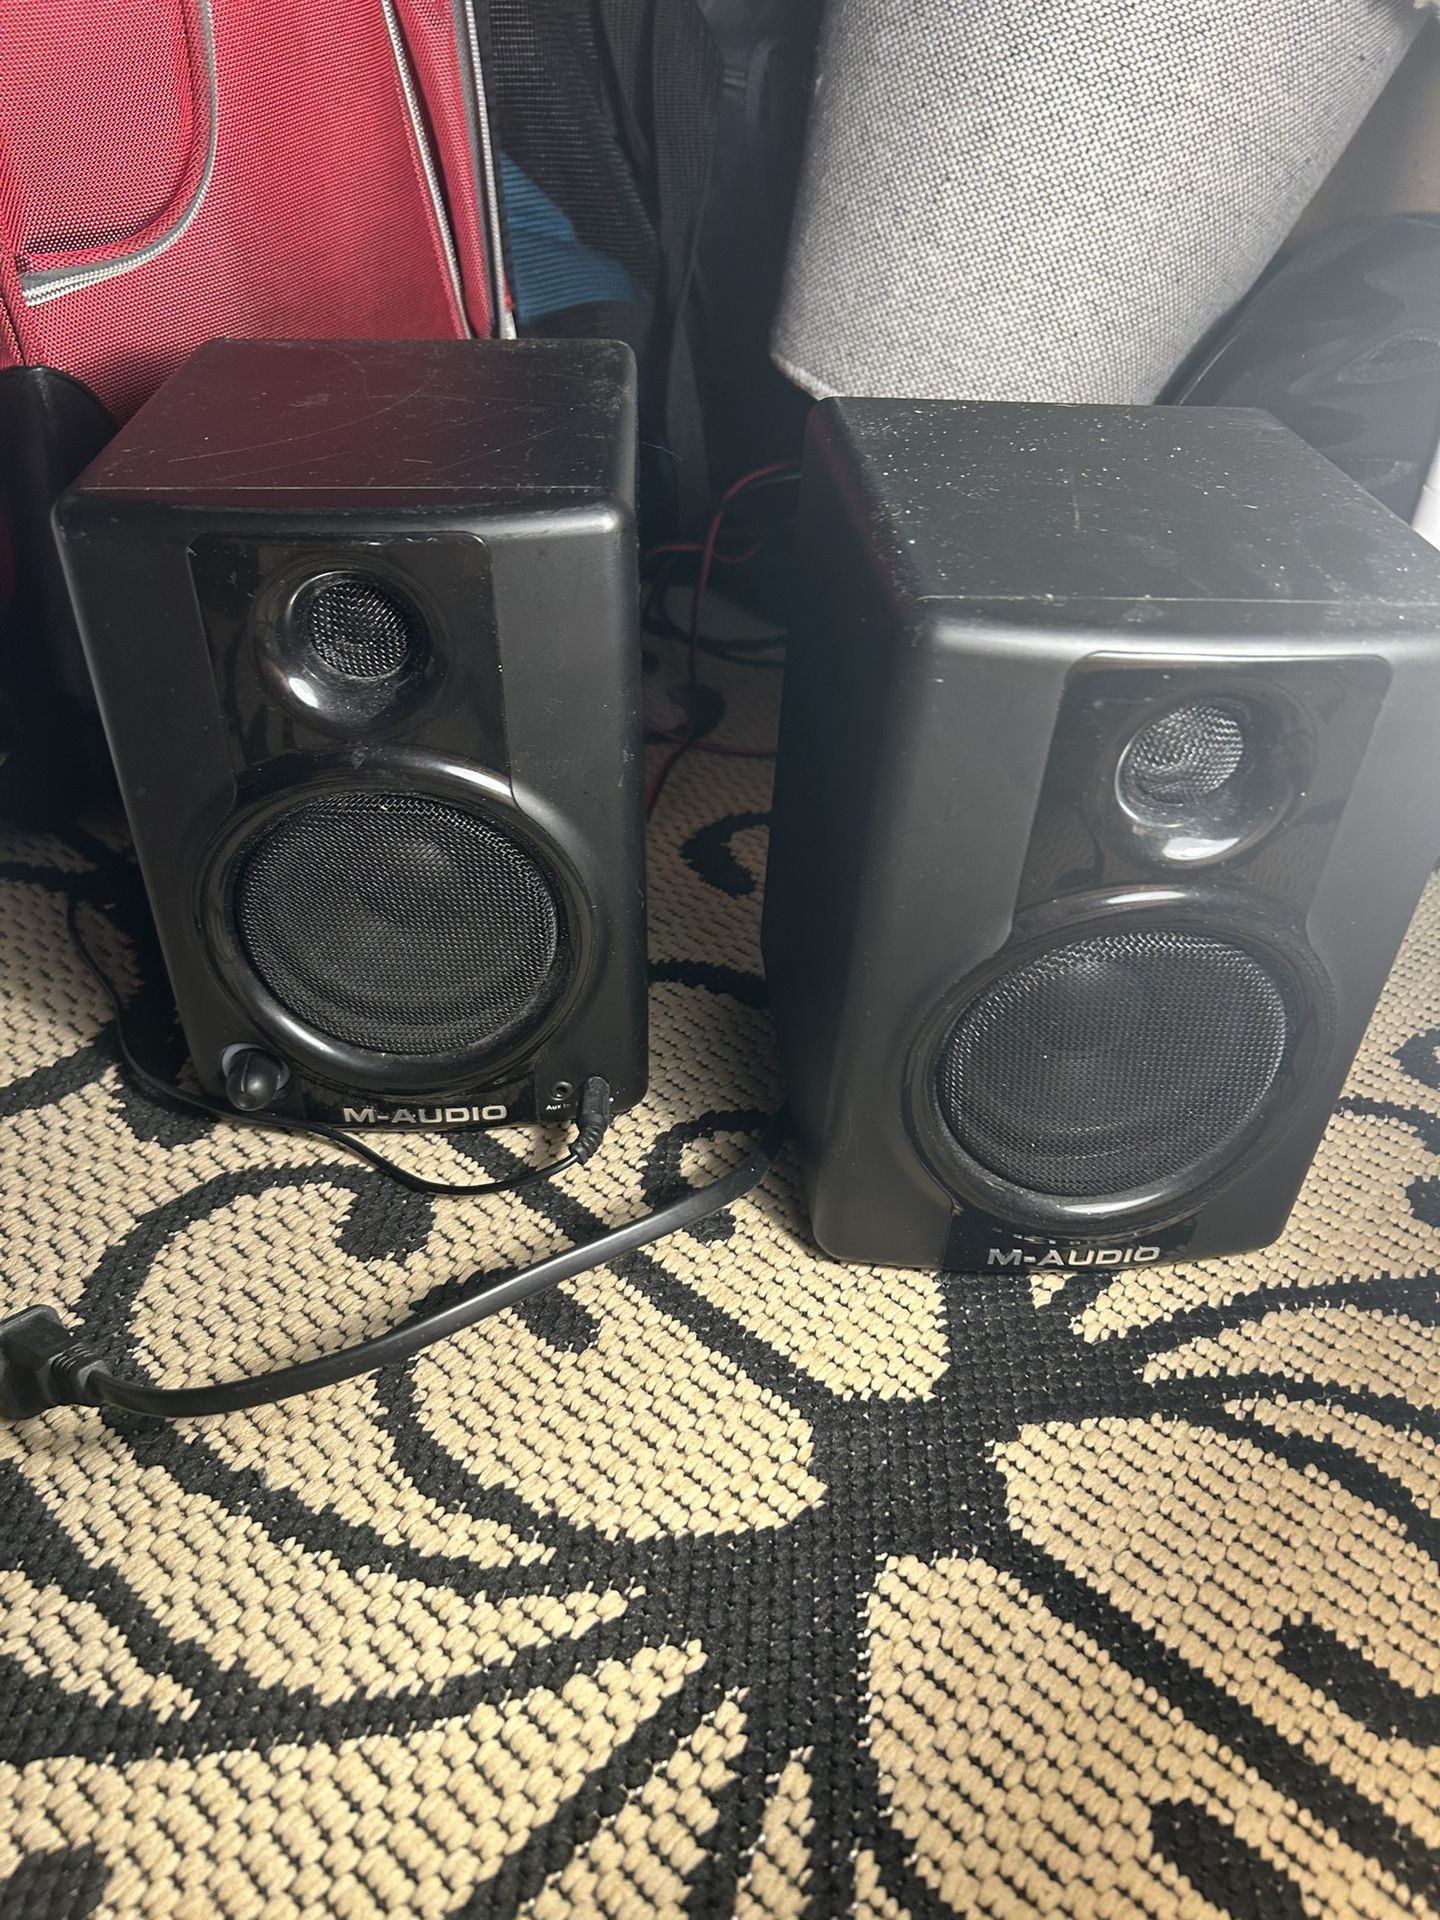 M- audio Speakers 